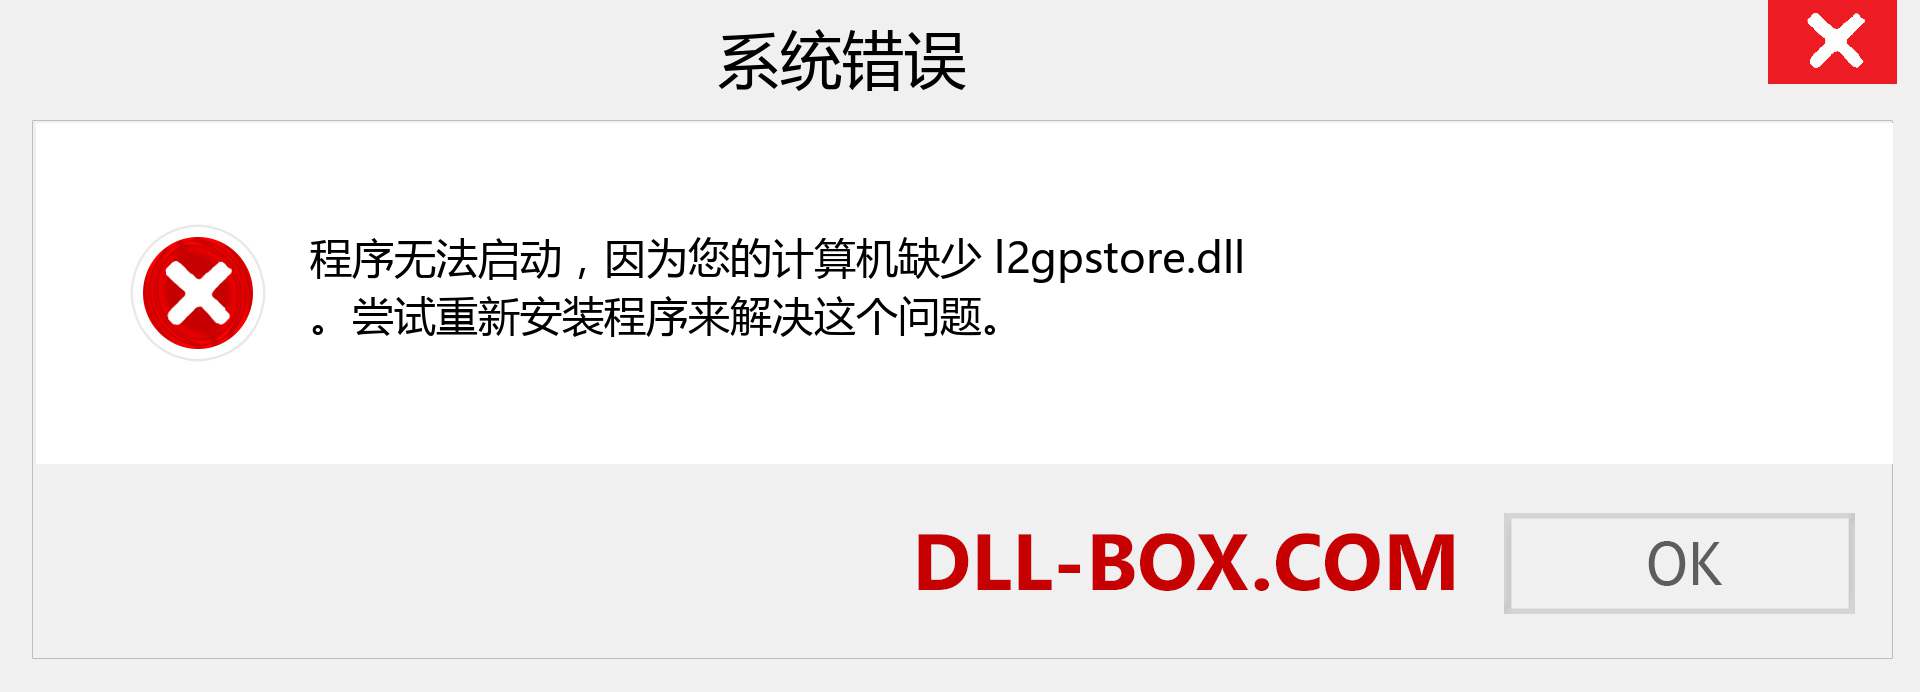 l2gpstore.dll 文件丢失？。 适用于 Windows 7、8、10 的下载 - 修复 Windows、照片、图像上的 l2gpstore dll 丢失错误